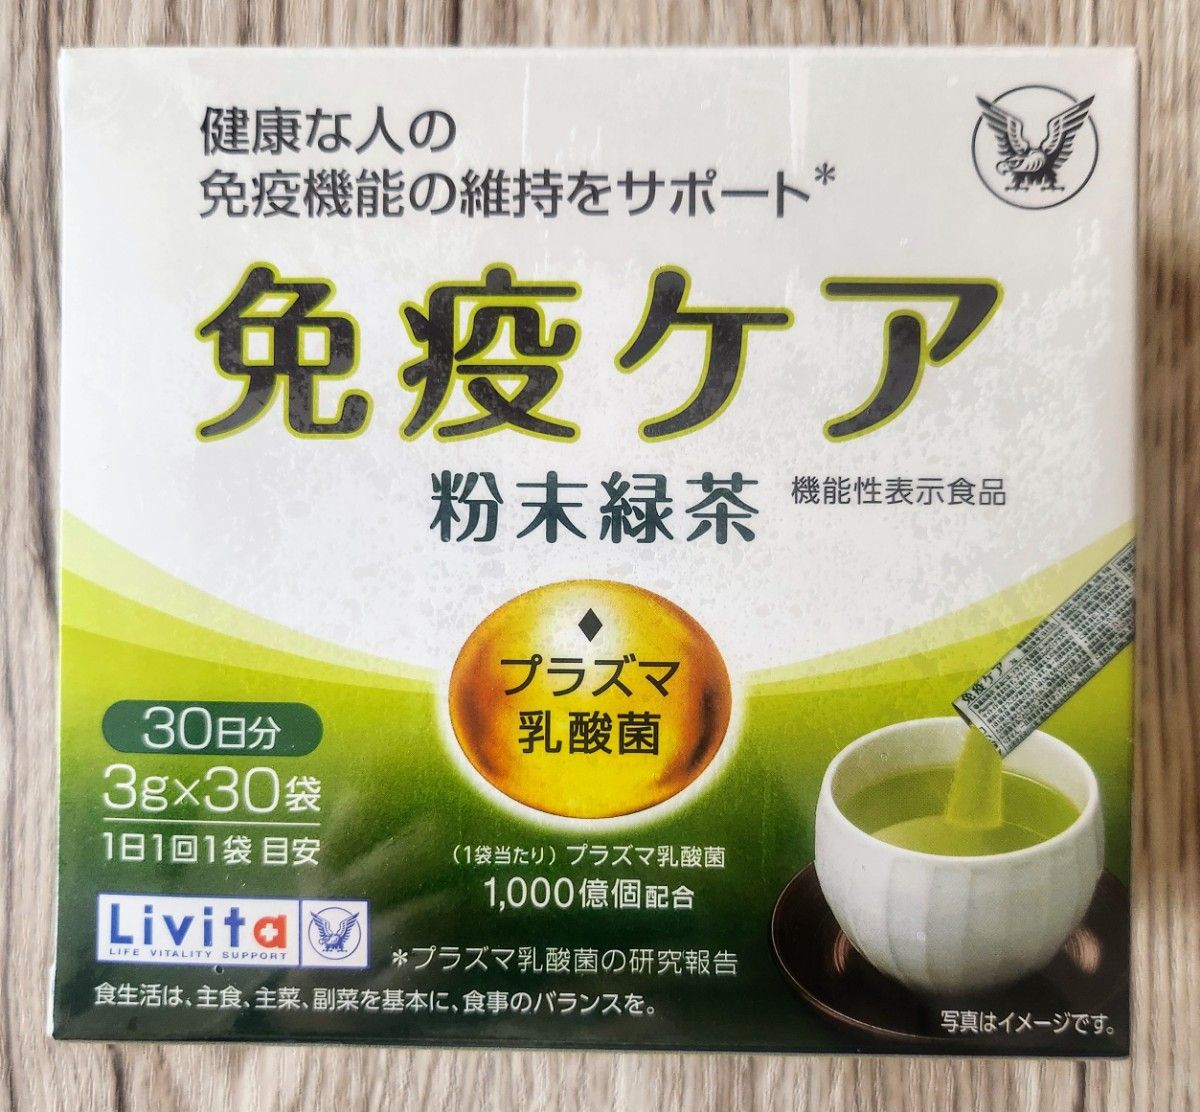 新品「大正製薬リビタ 免疫ケア プラズマ乳酸菌 粉末緑茶30包」